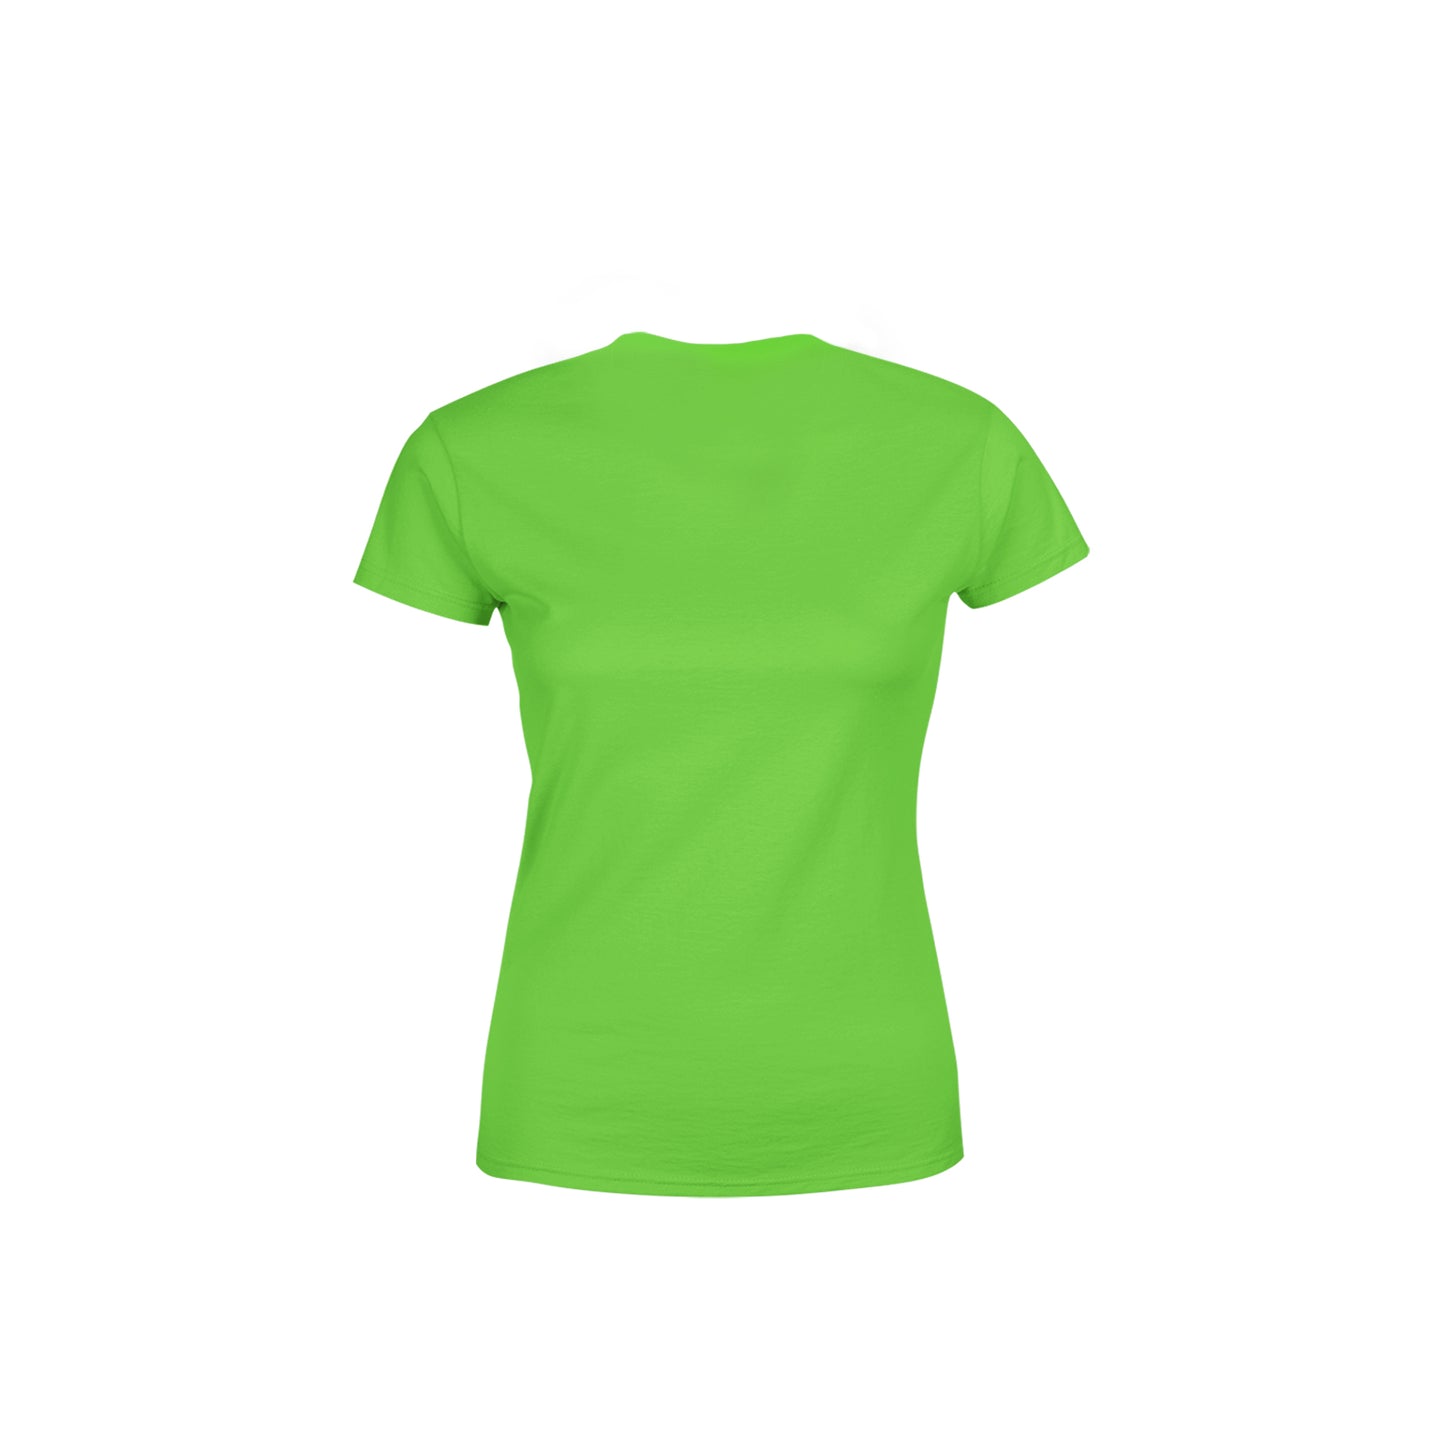 20 Number Women's T-Shirt (Liril Green)